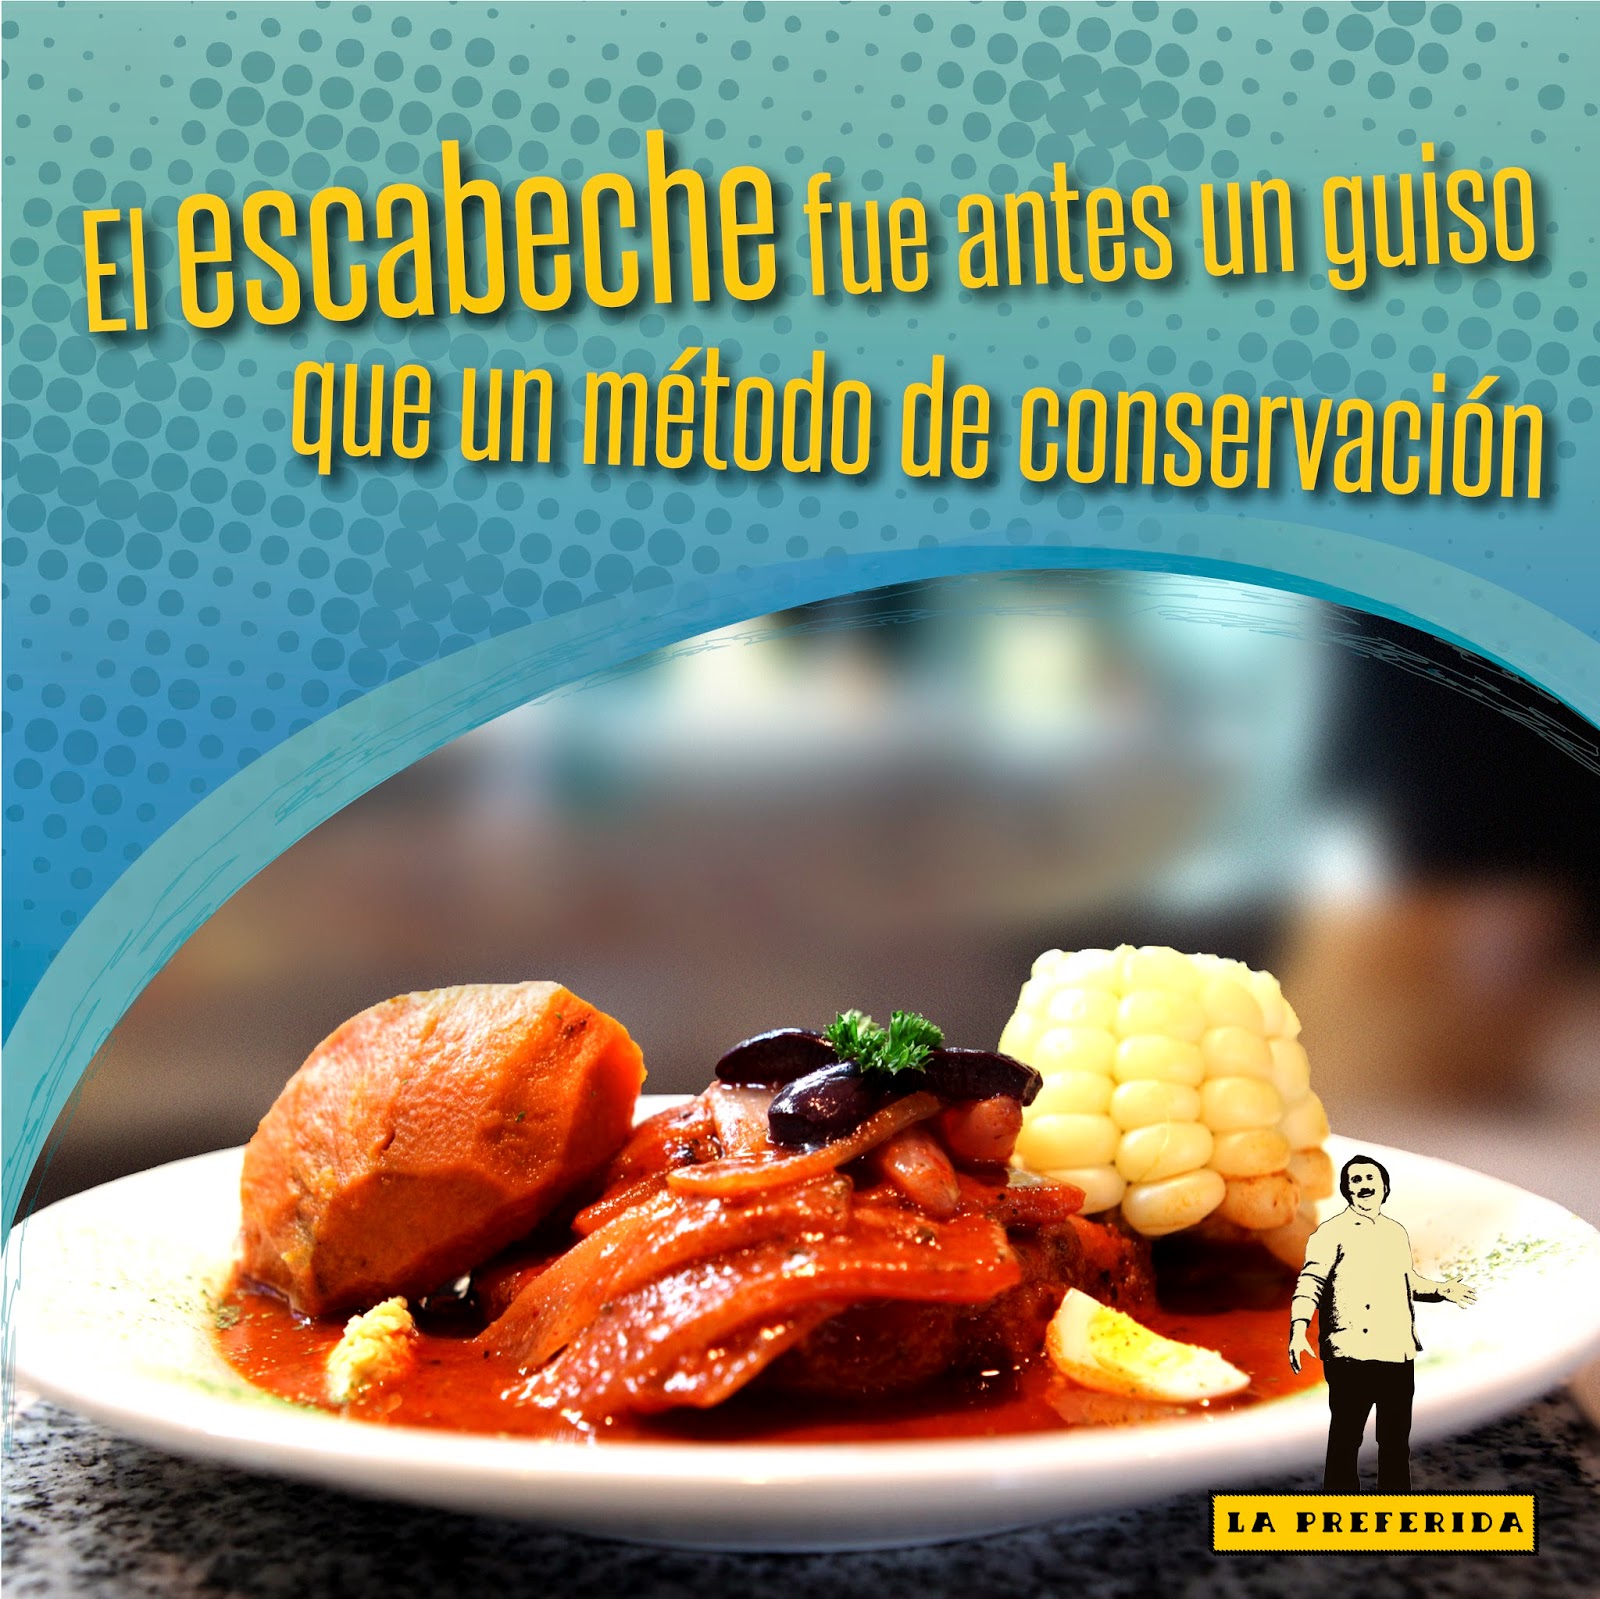  www.restaurantelapreferida.com